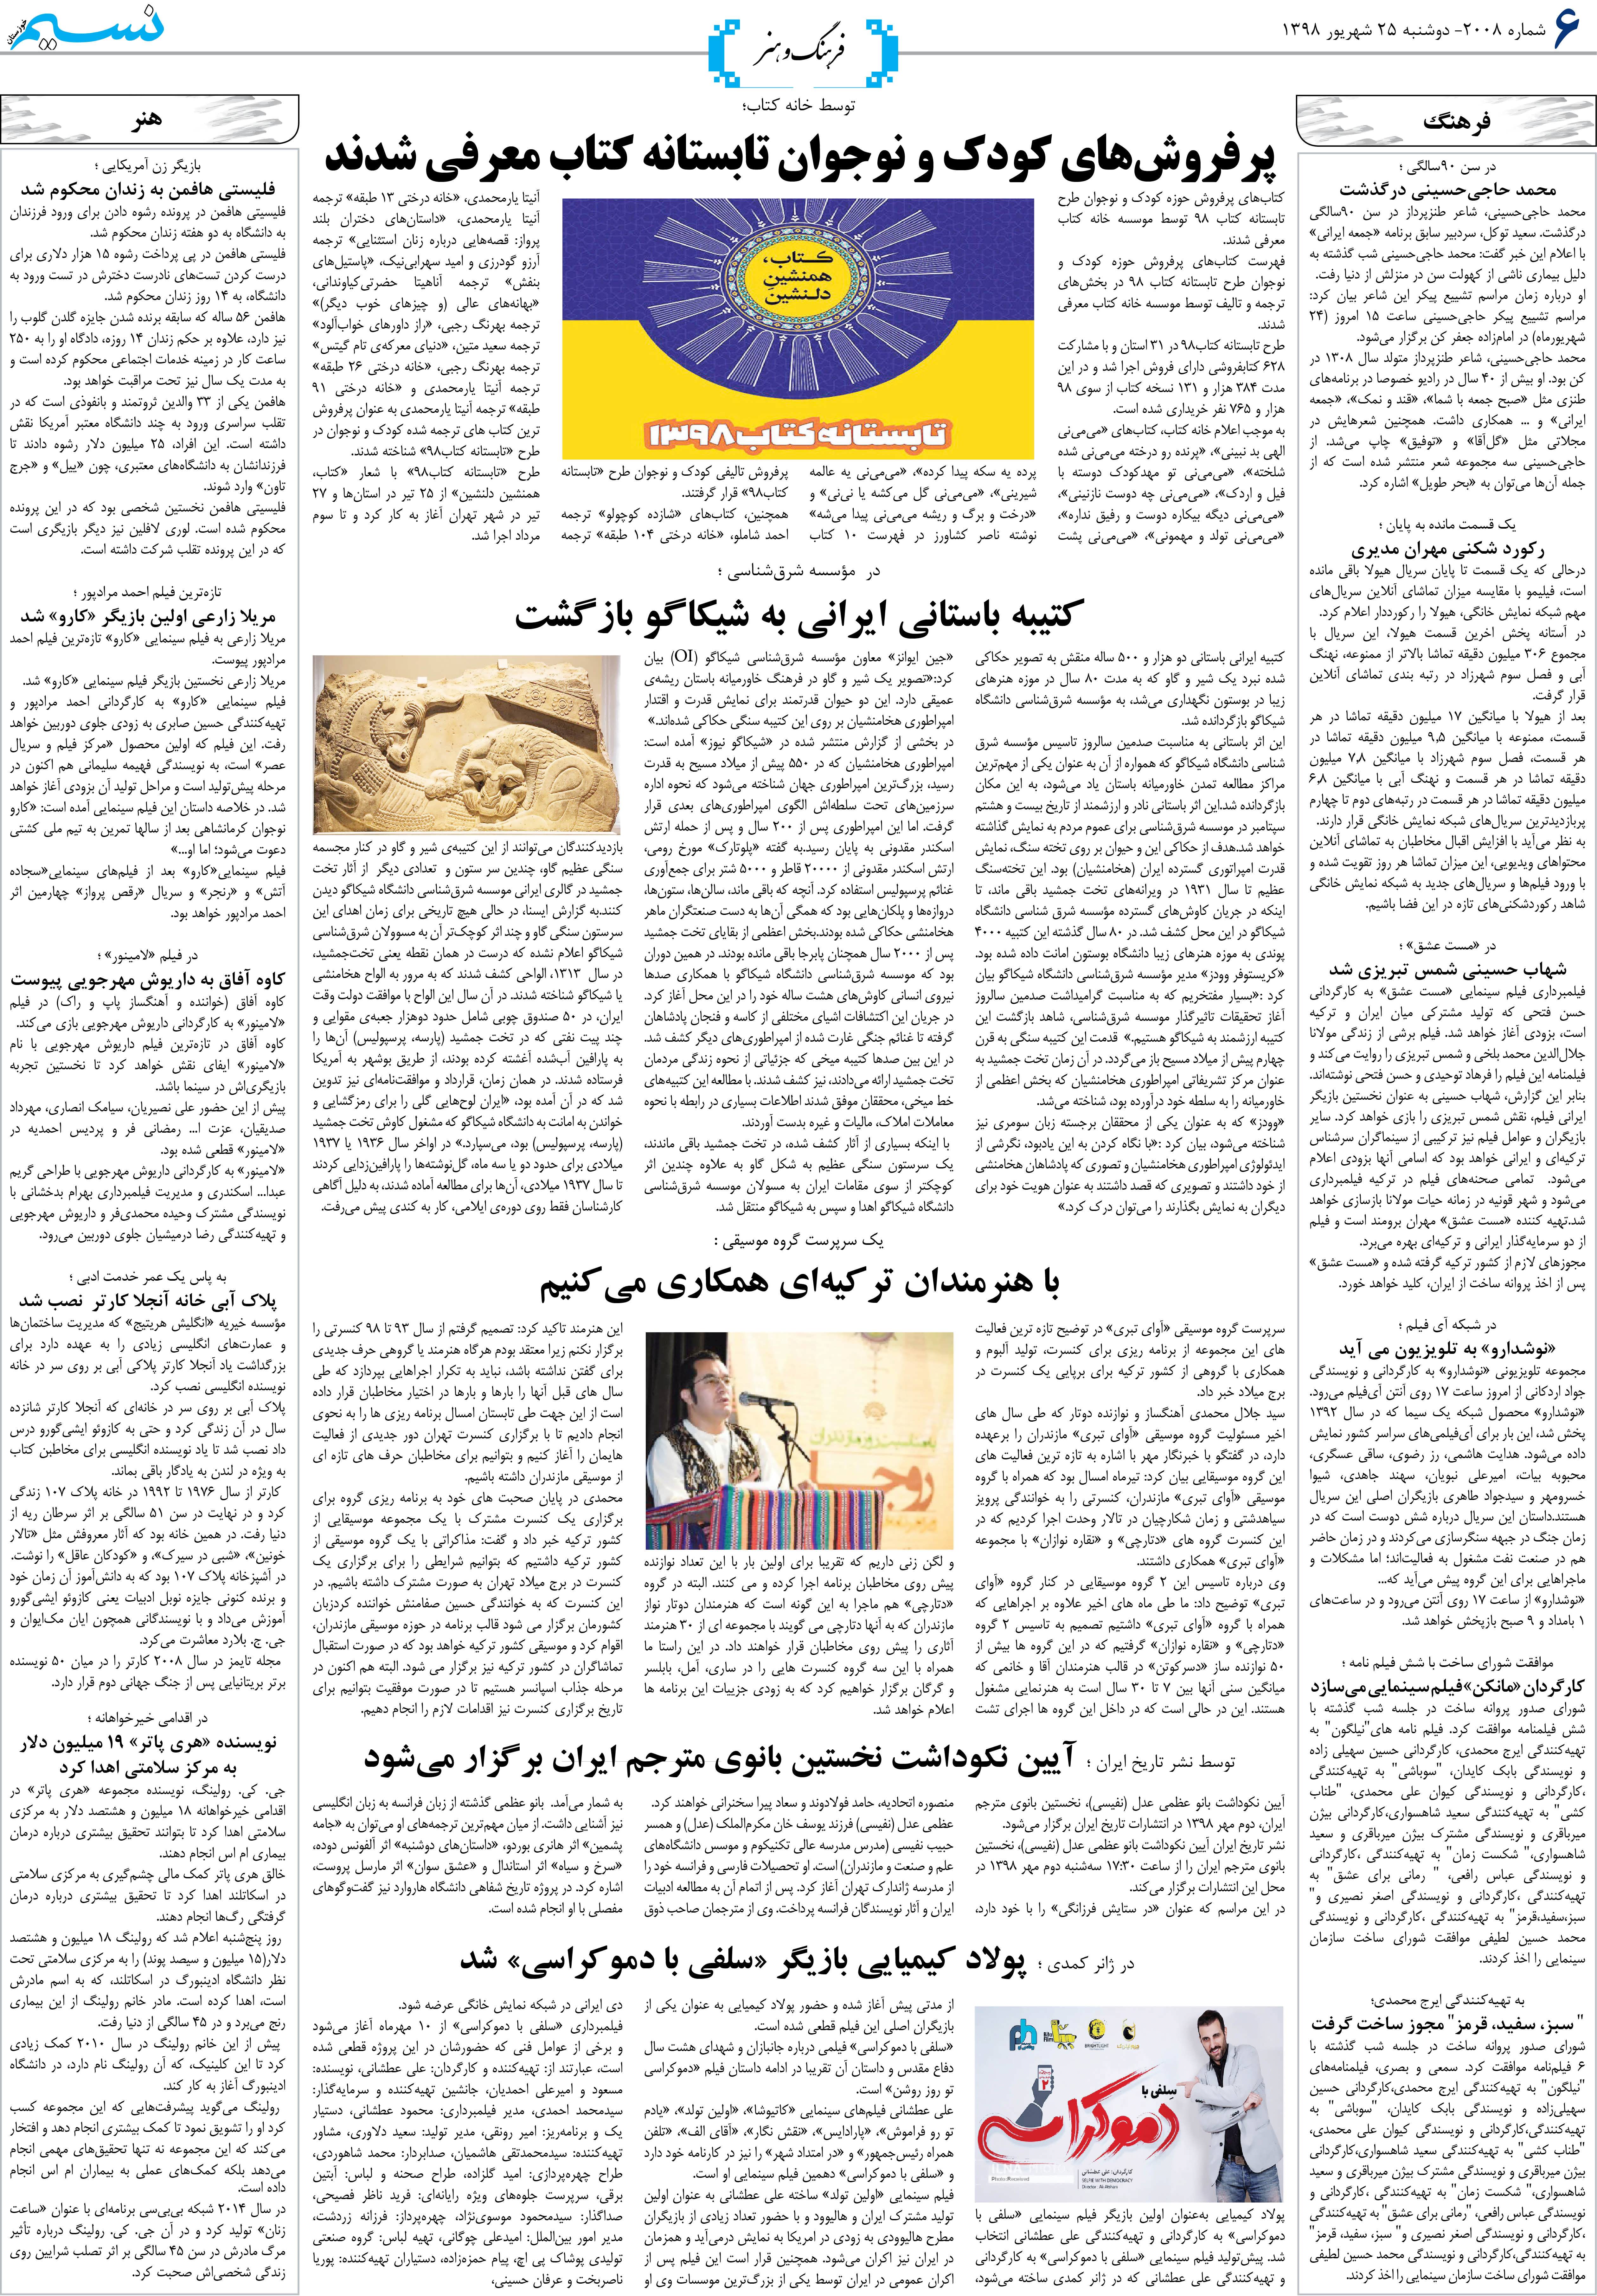 صفحه فرهنگ و هنر روزنامه نسیم شماره 2008